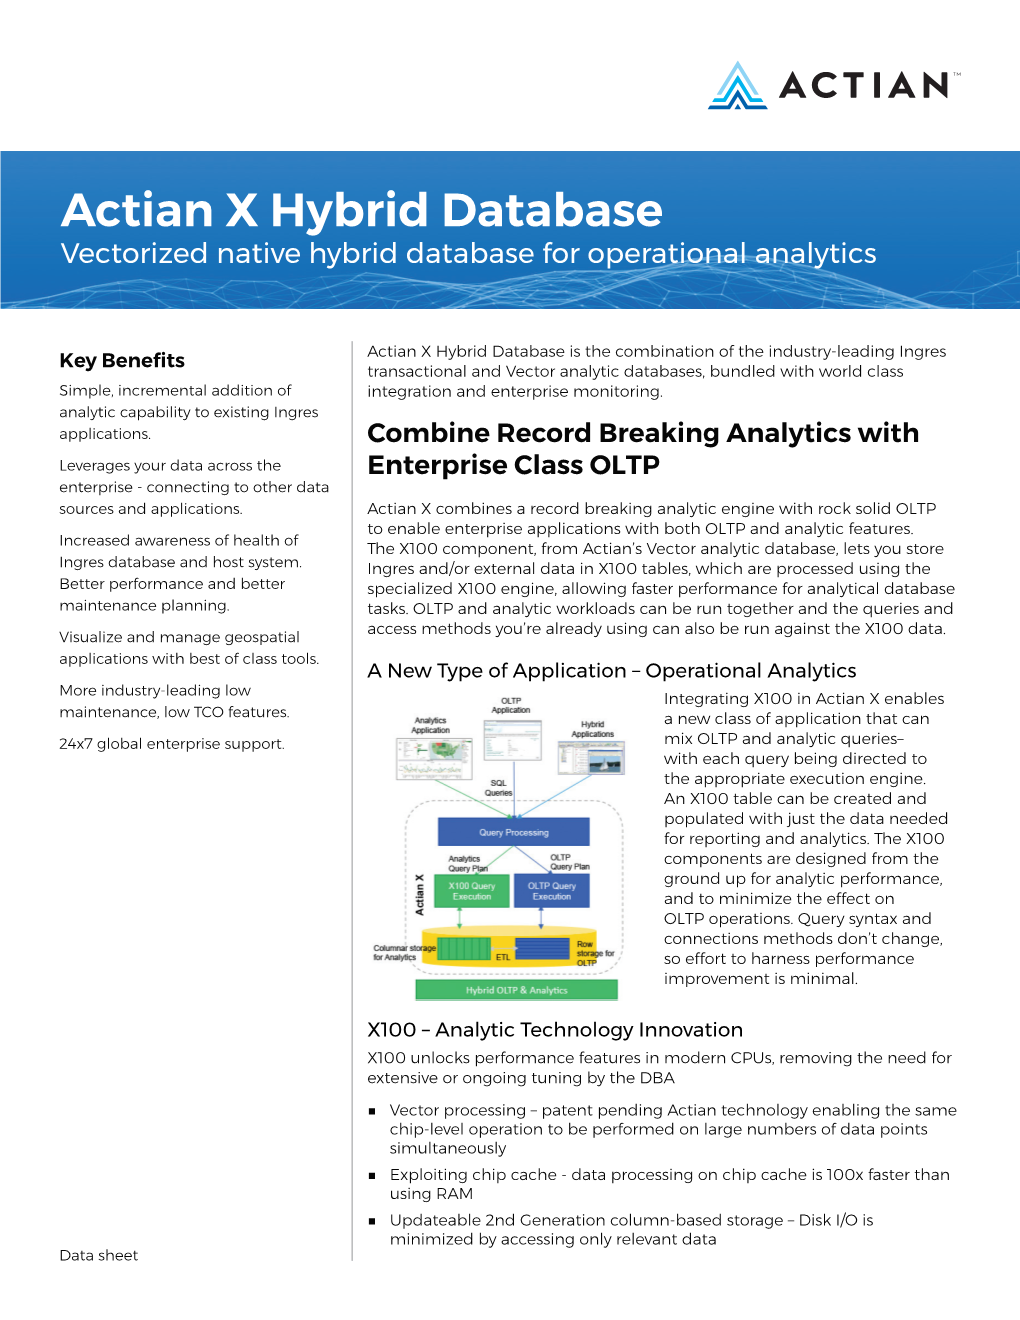 Actian X Hybrid Database Vectorized Native Hybrid Database for Operational Analytics